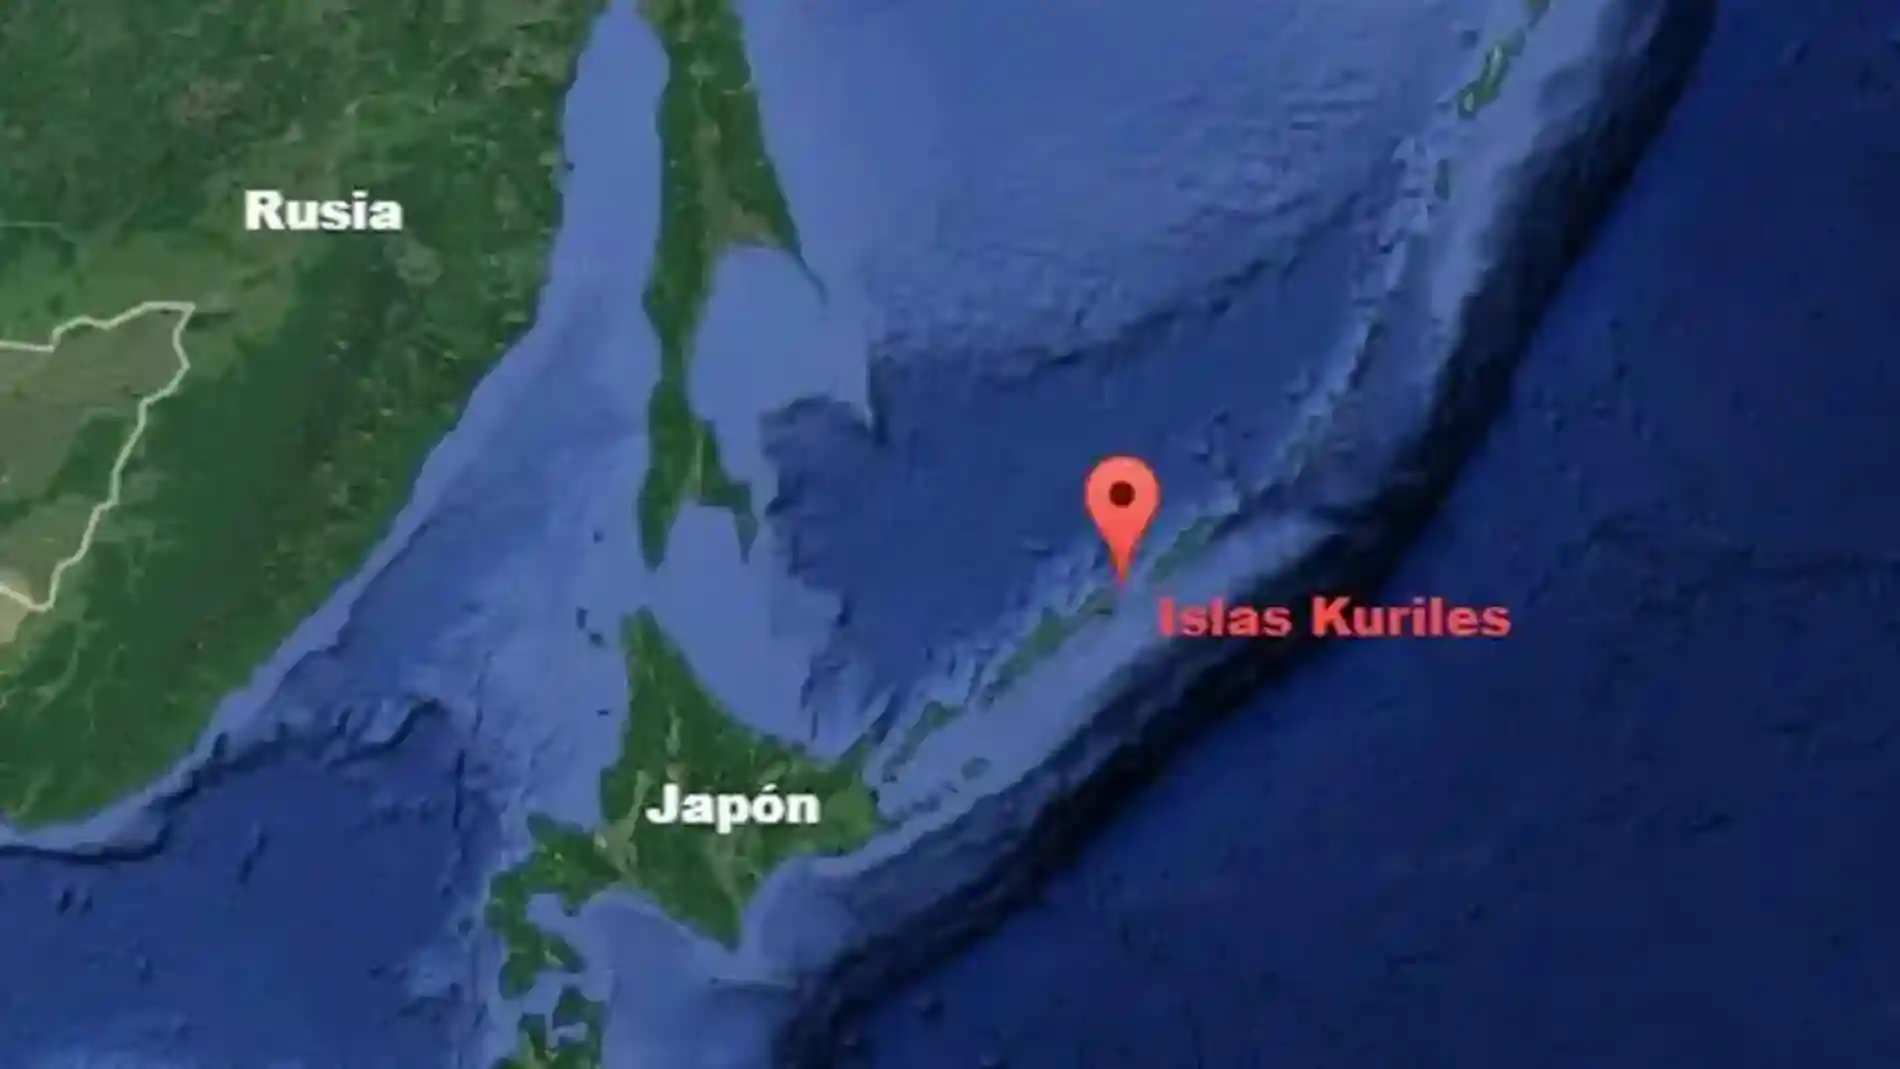 Las islas Kuriles son la eterna disputa entre Rusia y Japón